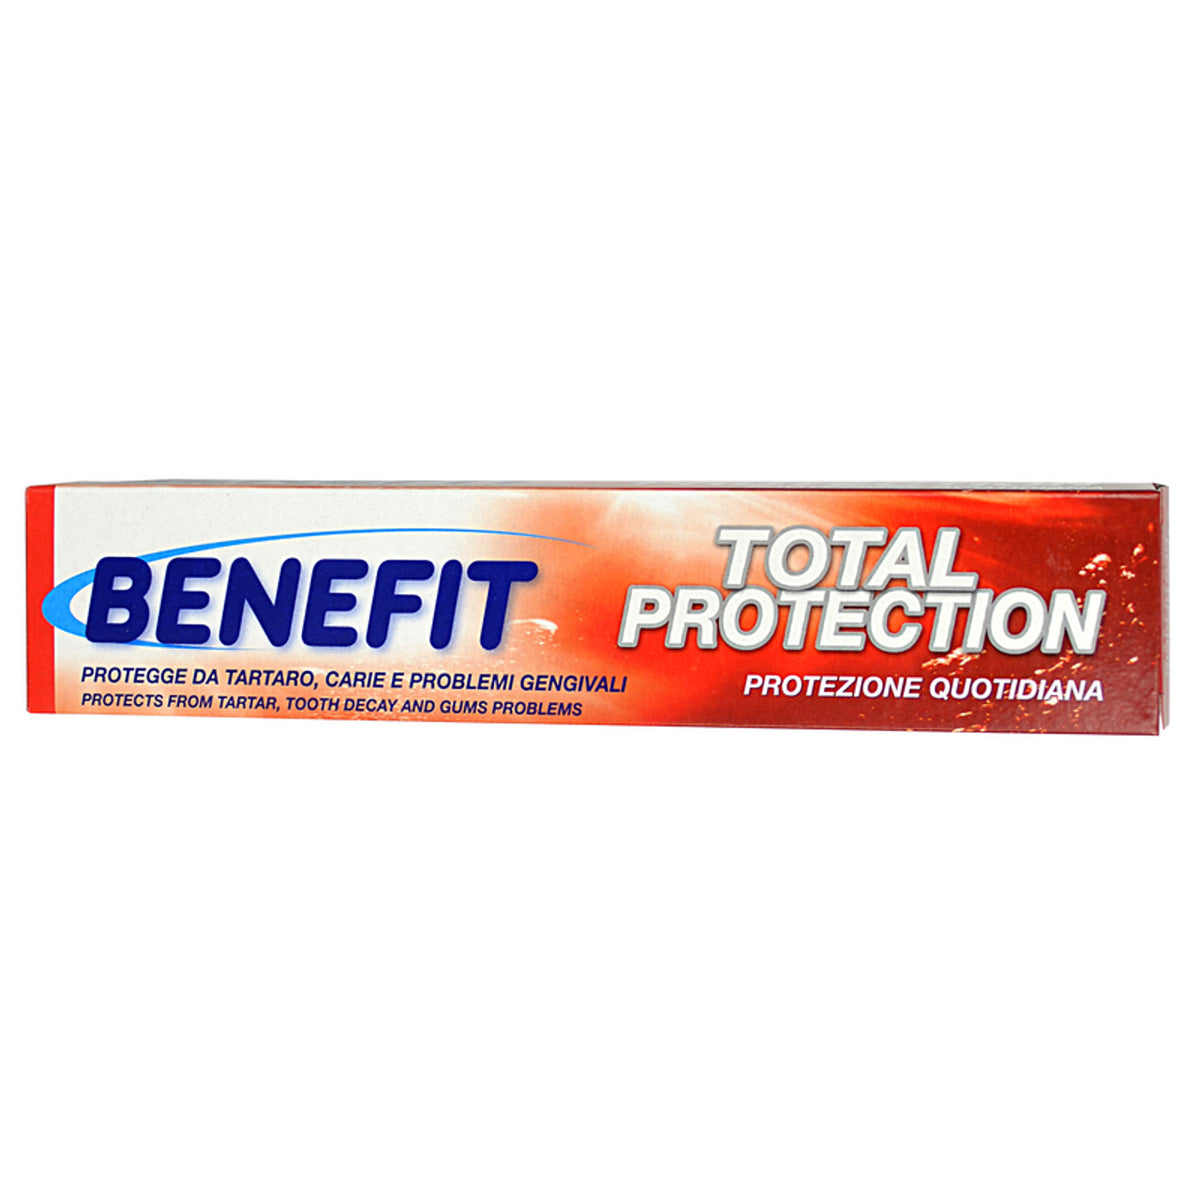 Protecția totală 75 ml beneficiază pasta de dinți.